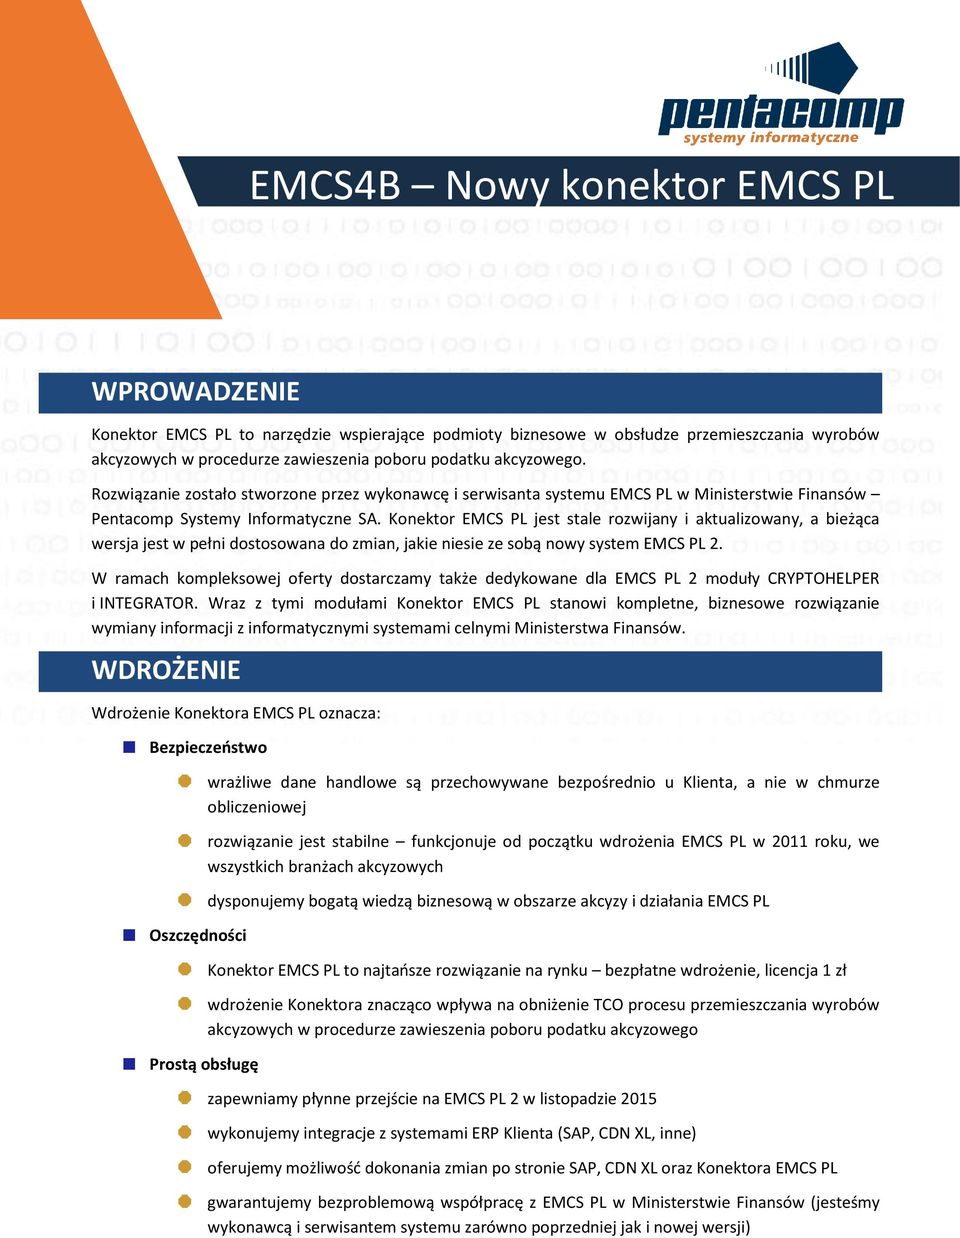 Konektor EMCS PL jest stale rozwijany i aktualizowany, a bieżąca wersja jest w pełni dostosowana do zmian, jakie niesie ze sobą nowy system EMCS PL 2.